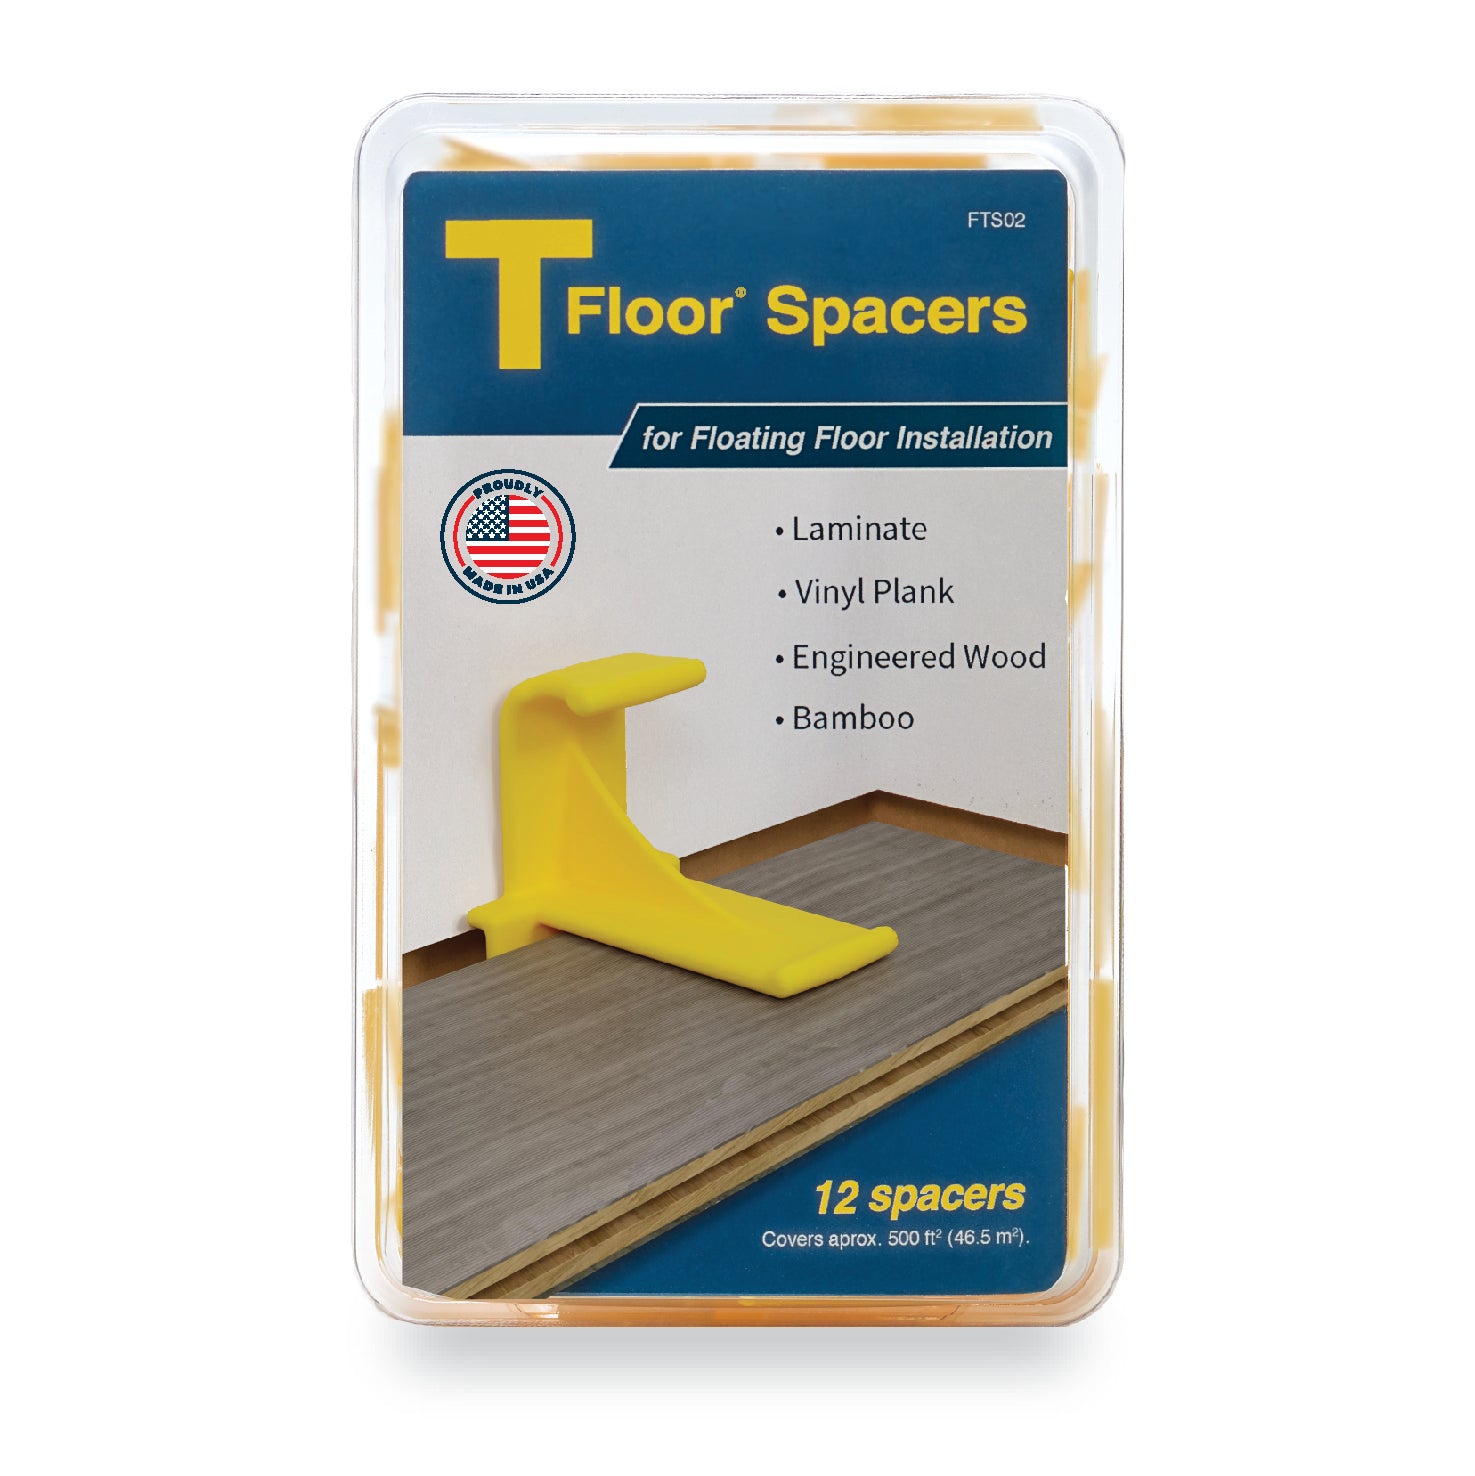 TFloor Spacers (12 pack) for Laminate Wood Flooring Installation. - TFloor® Spacers